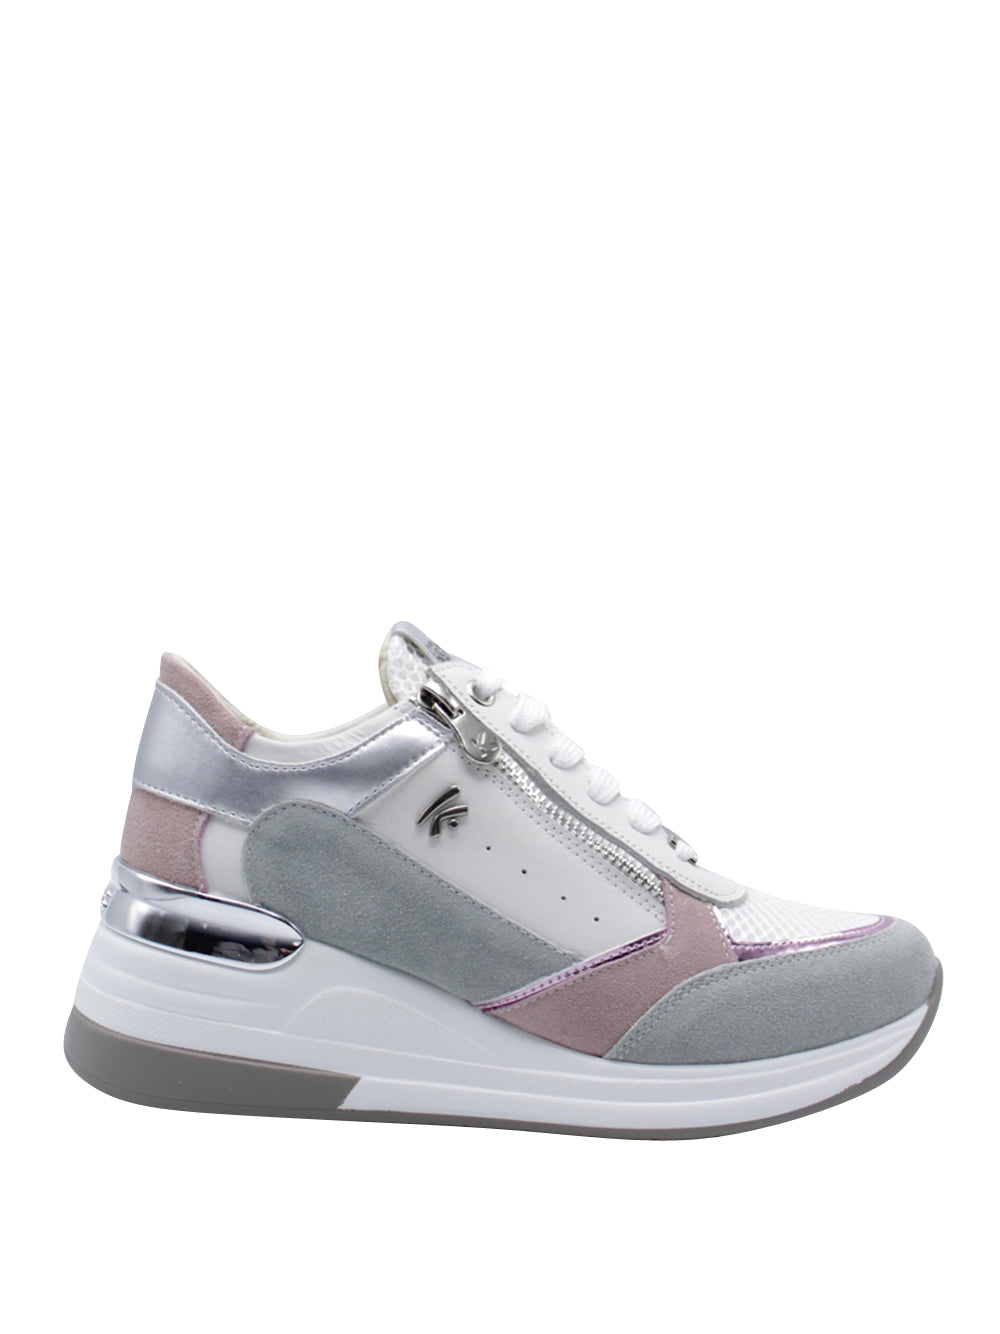 KEY'S Sneakers con zeppa Donna - Bianco modello 9026